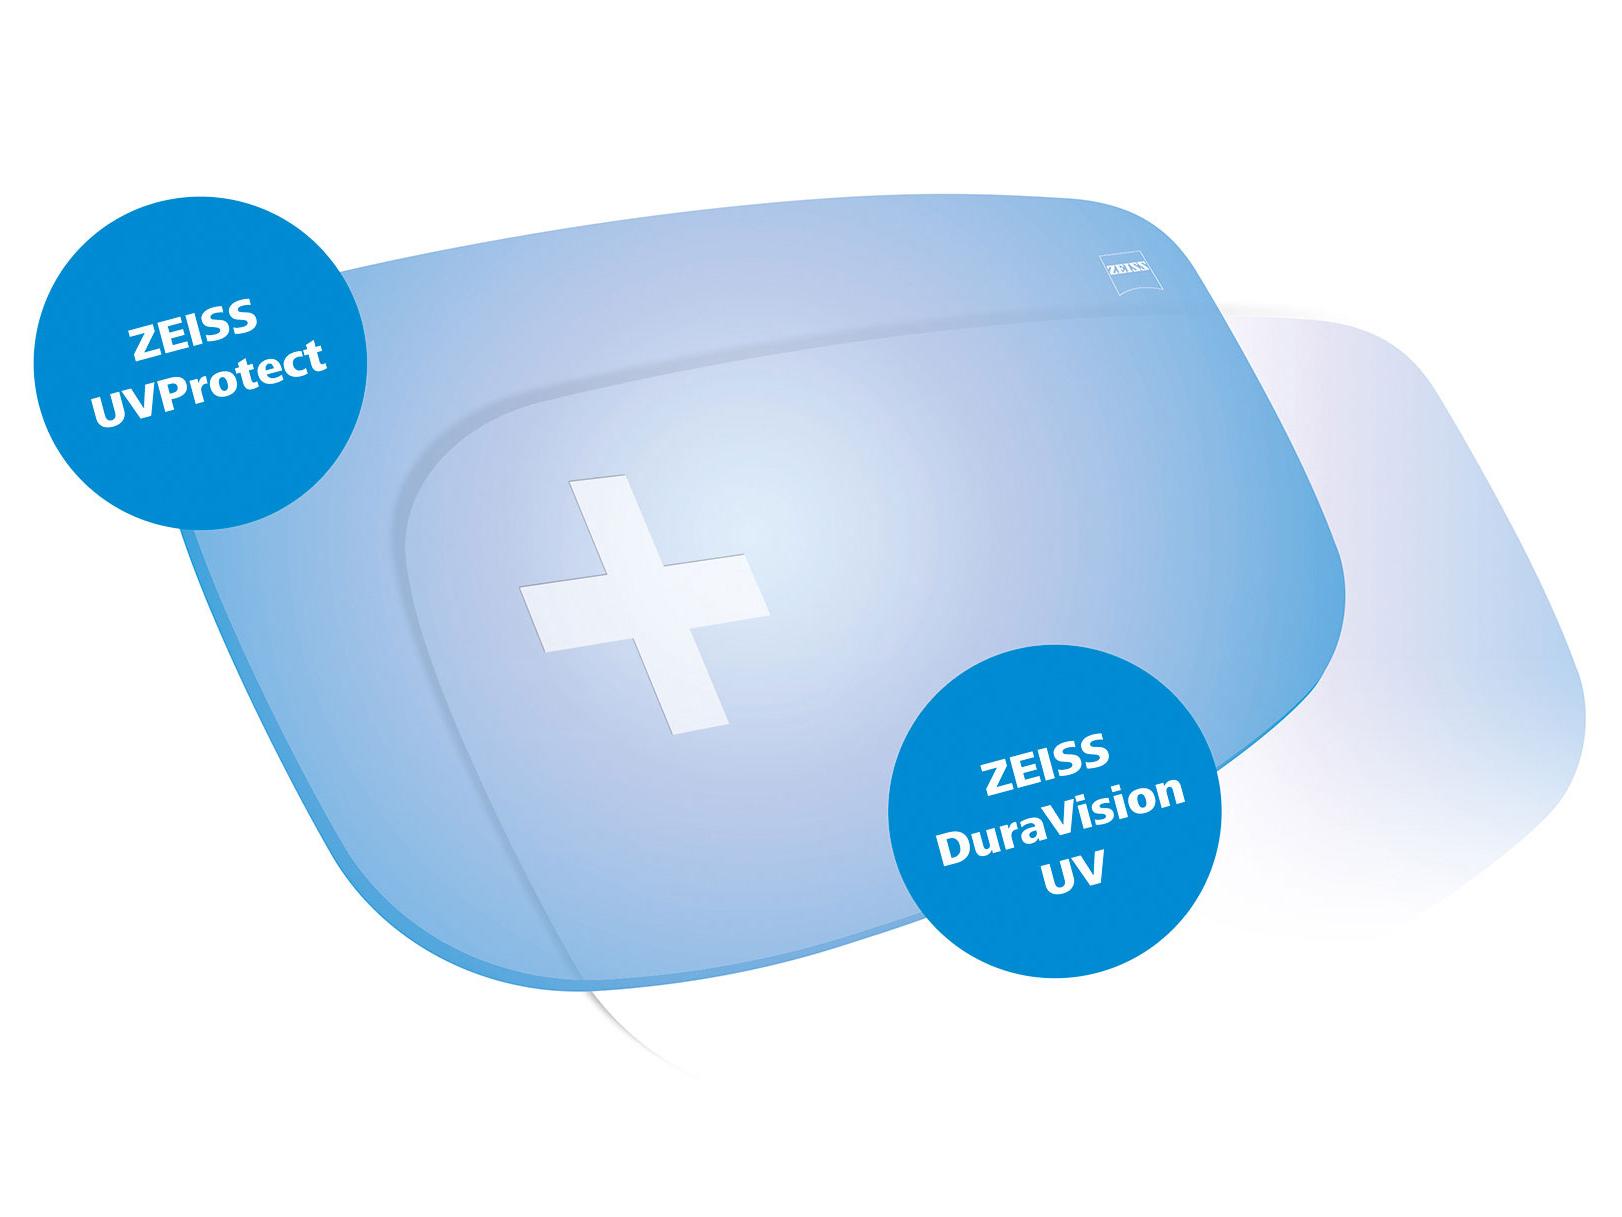 Alle ZEISS glazen worden standaard met UV-bescherming aan alle kanten geleverd. De graphic toont twee oplossingen.